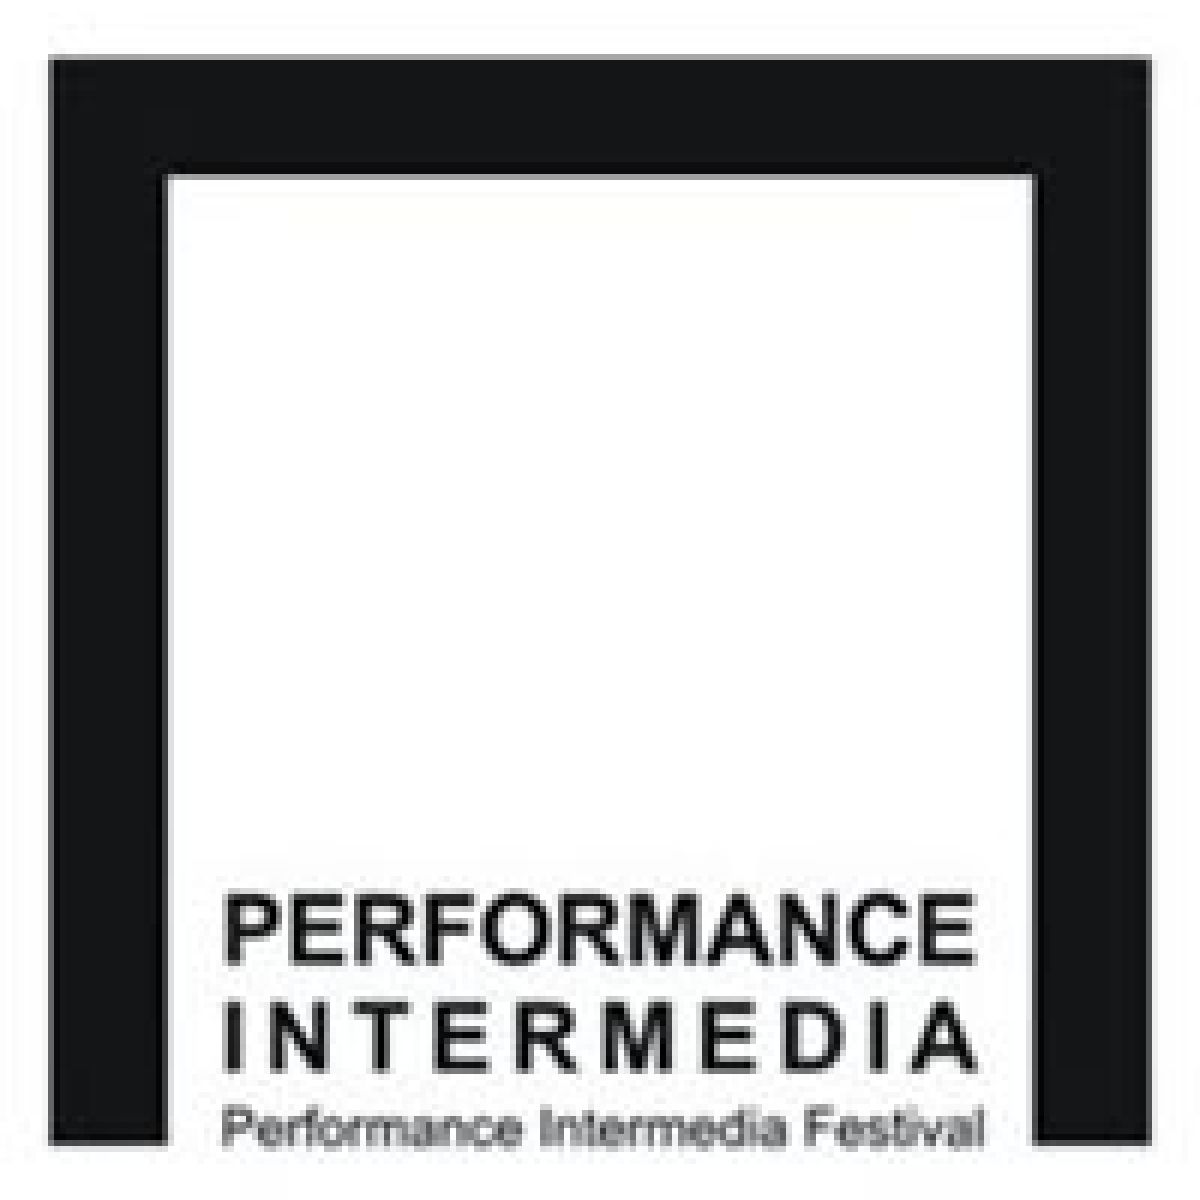 Performance Intermadia Festiwal